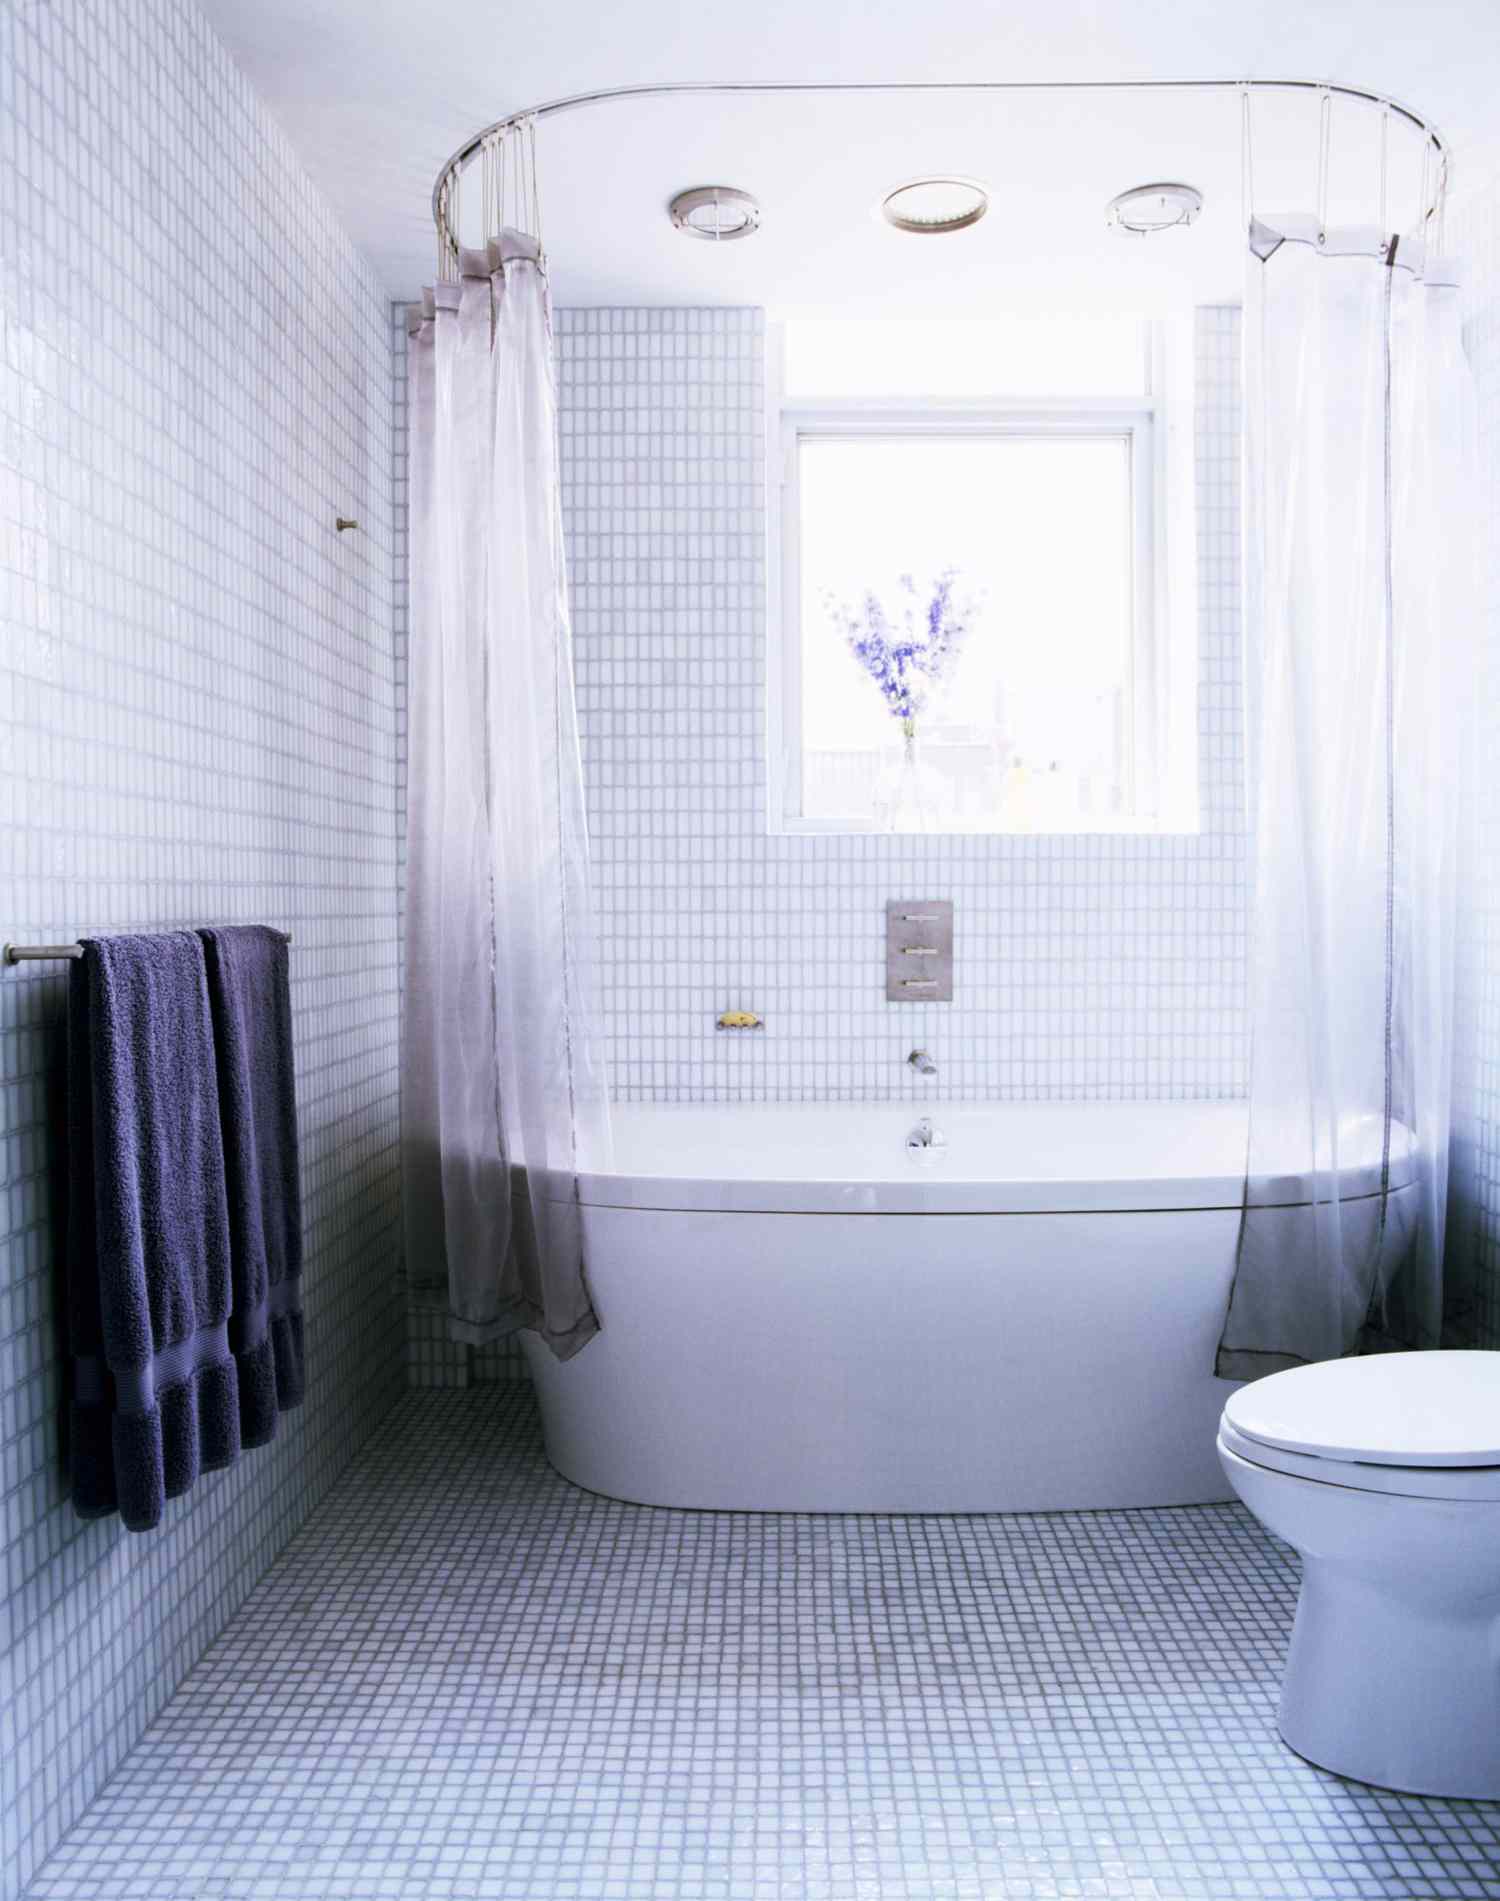 浴室铺着浅蓝色瓷砖